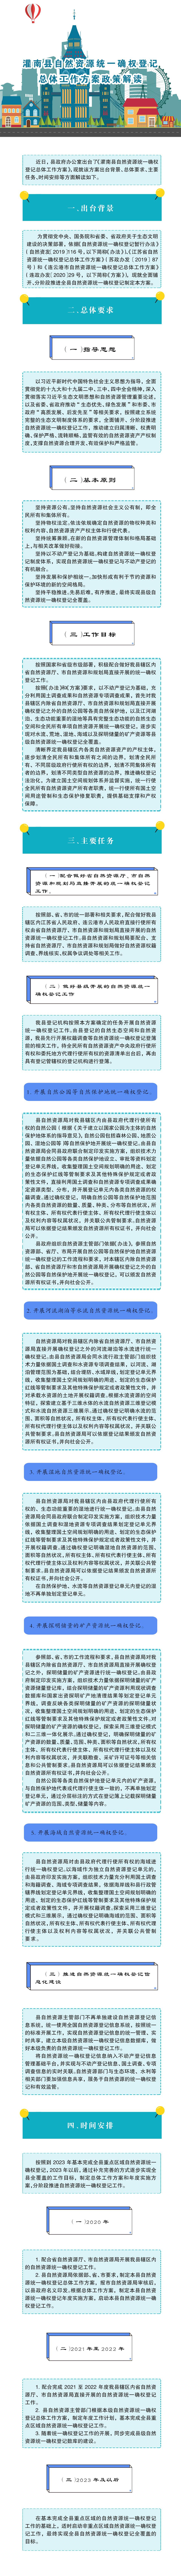 灌南县自然资源统一确权登记总体工作方案政策解读.jpg